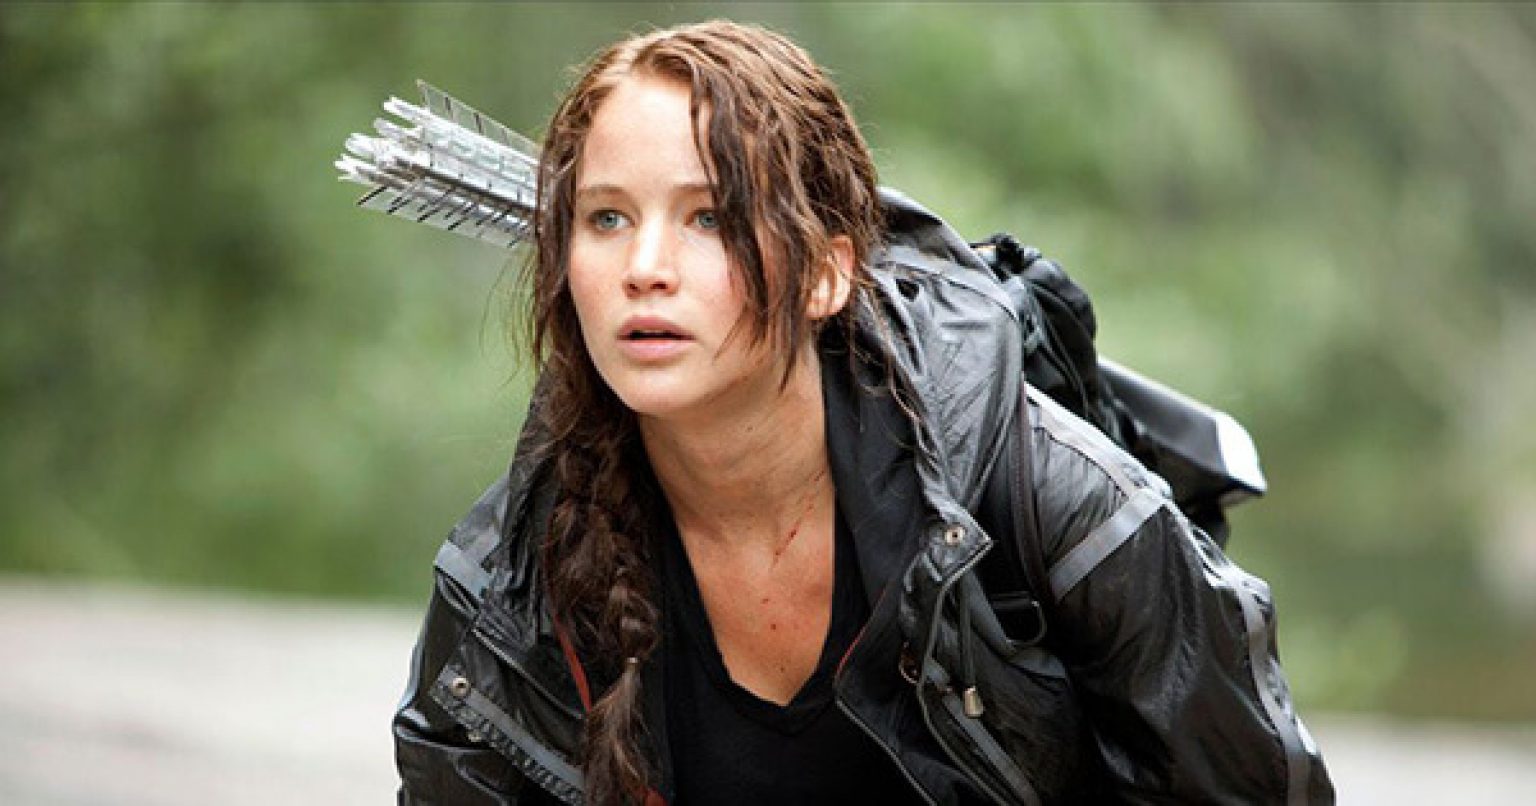 Hunger Games sur Netflix tutoriel pour regarder TOUS les films (Tuto)